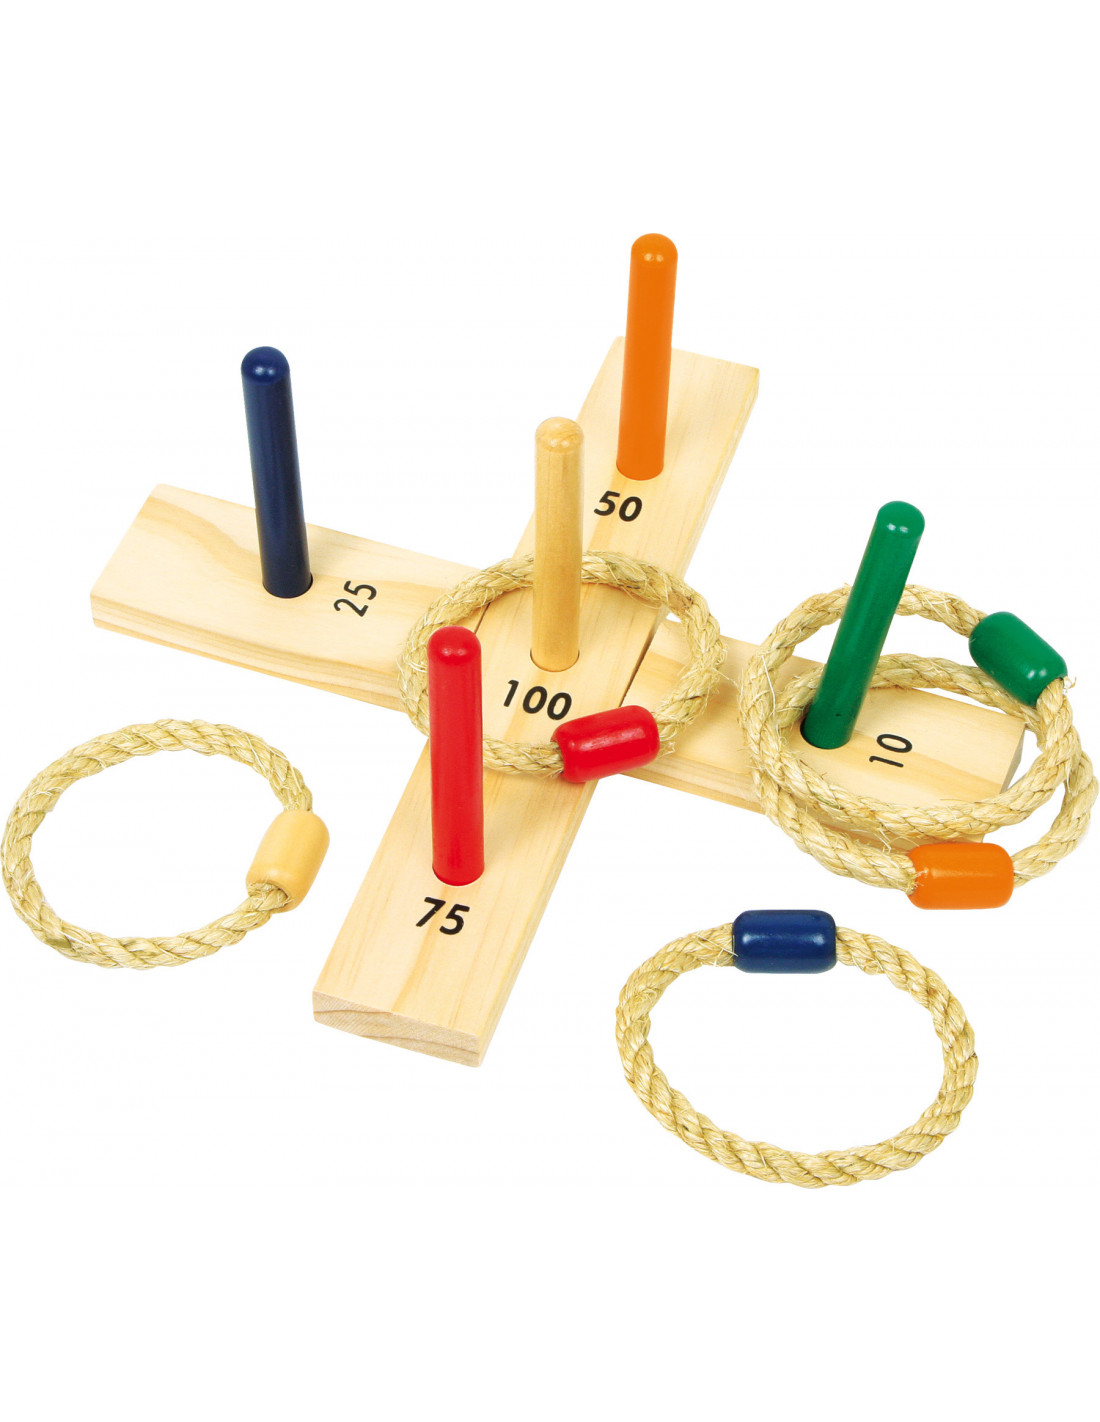 olifant krokodil eenheid Ringen gooi spel voor buiten - Duurzaam houten speelgoed